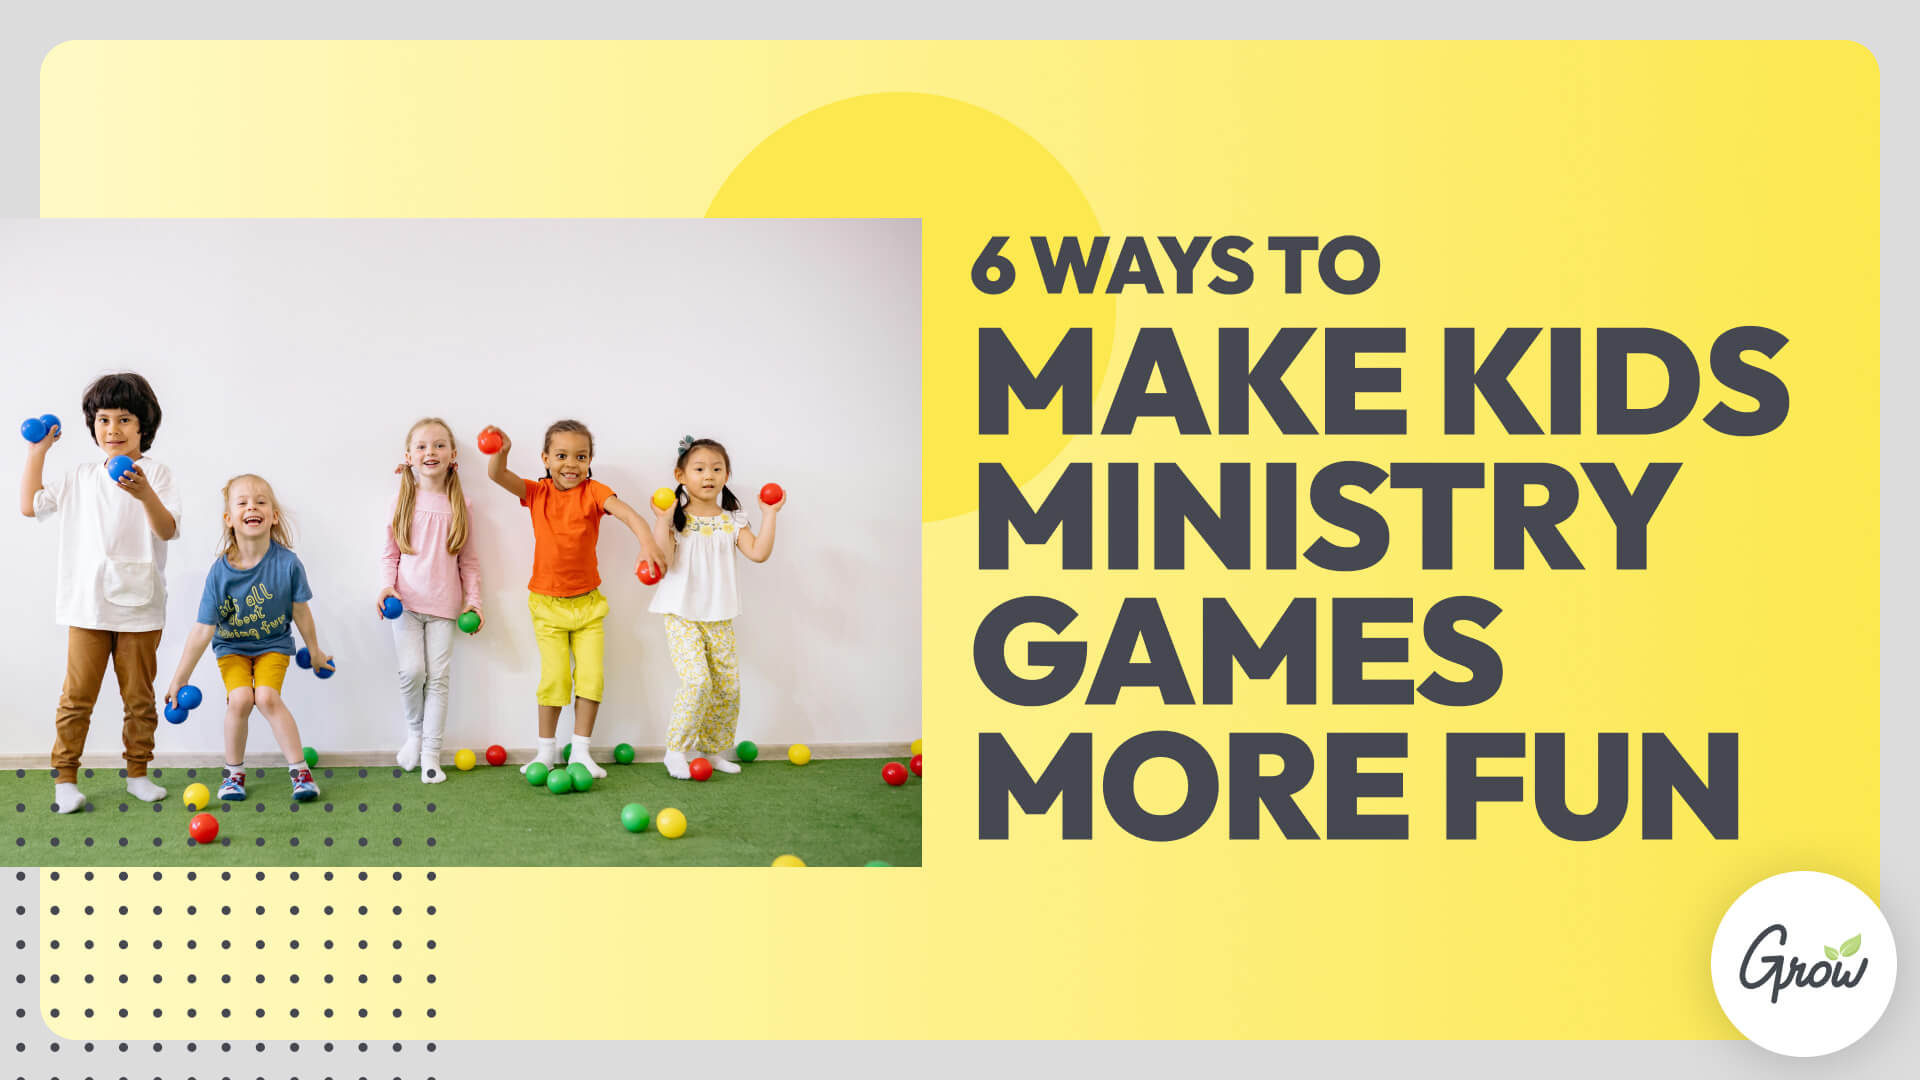 6 Ways to Make Kids Ministry Games More Fun